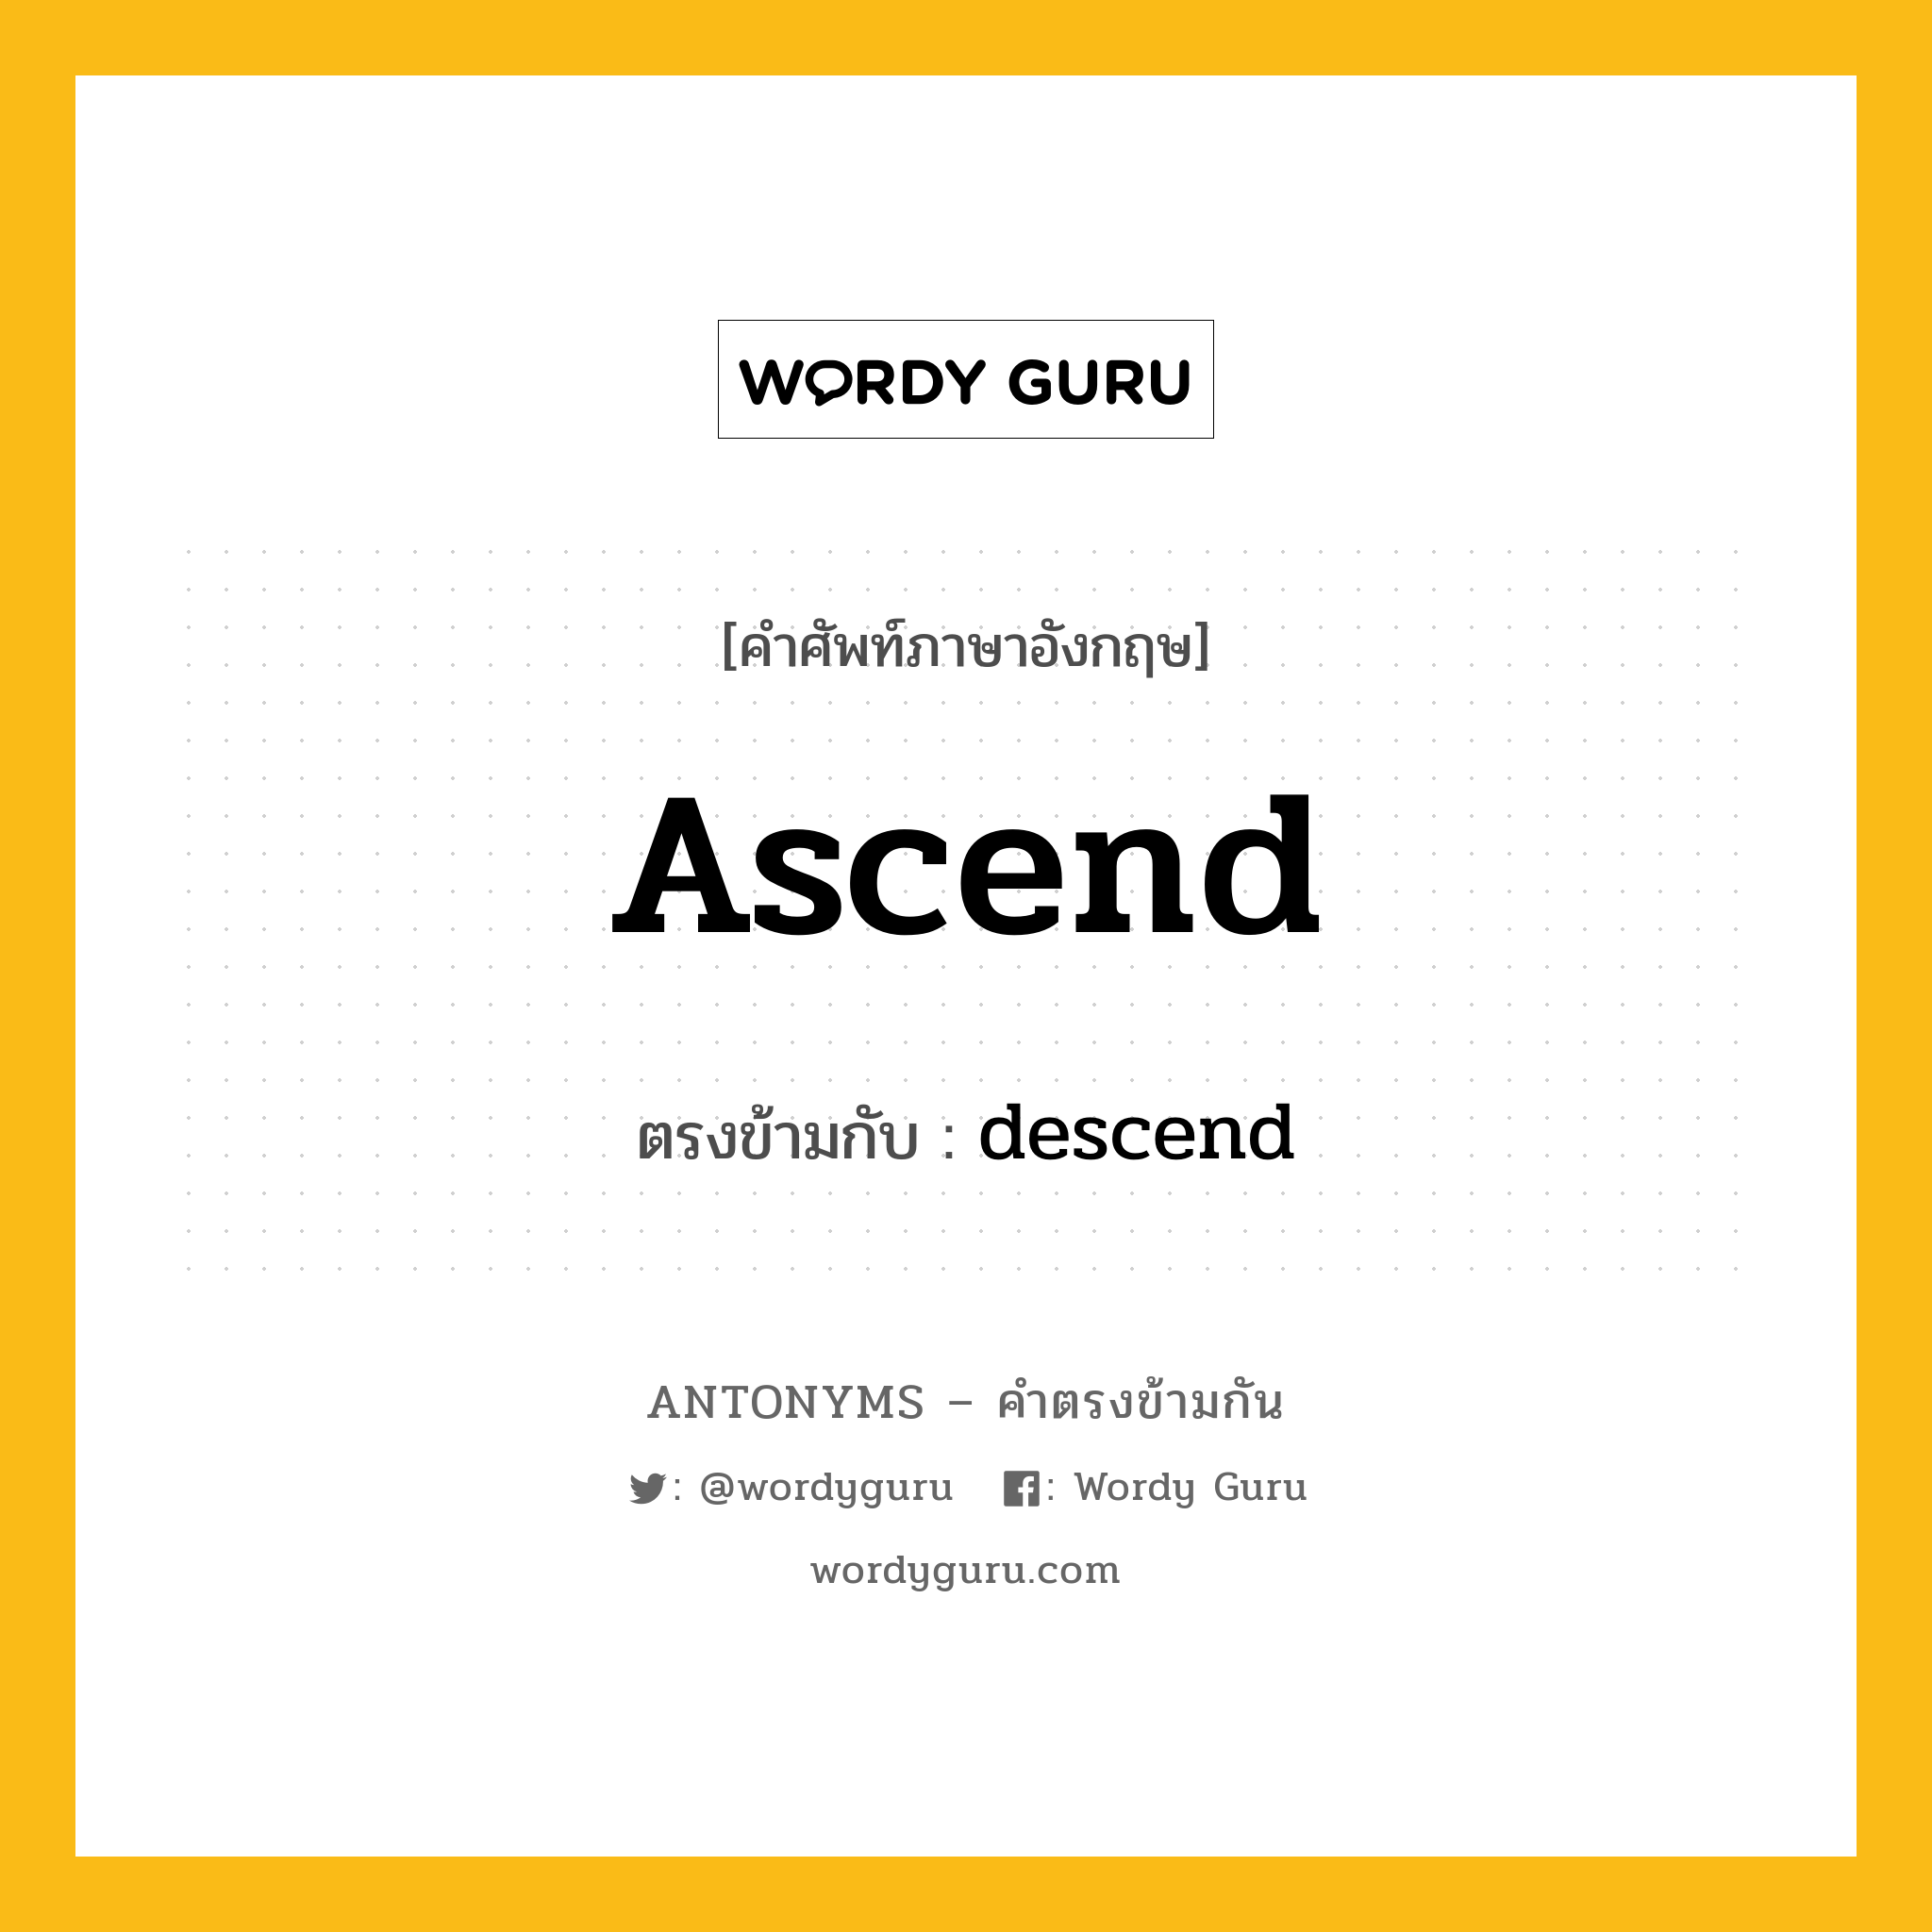 ascend เป็นคำตรงข้ามกับคำไหนบ้าง?, คำศัพท์ภาษาอังกฤษ ascend ตรงข้ามกับ descend หมวด descend